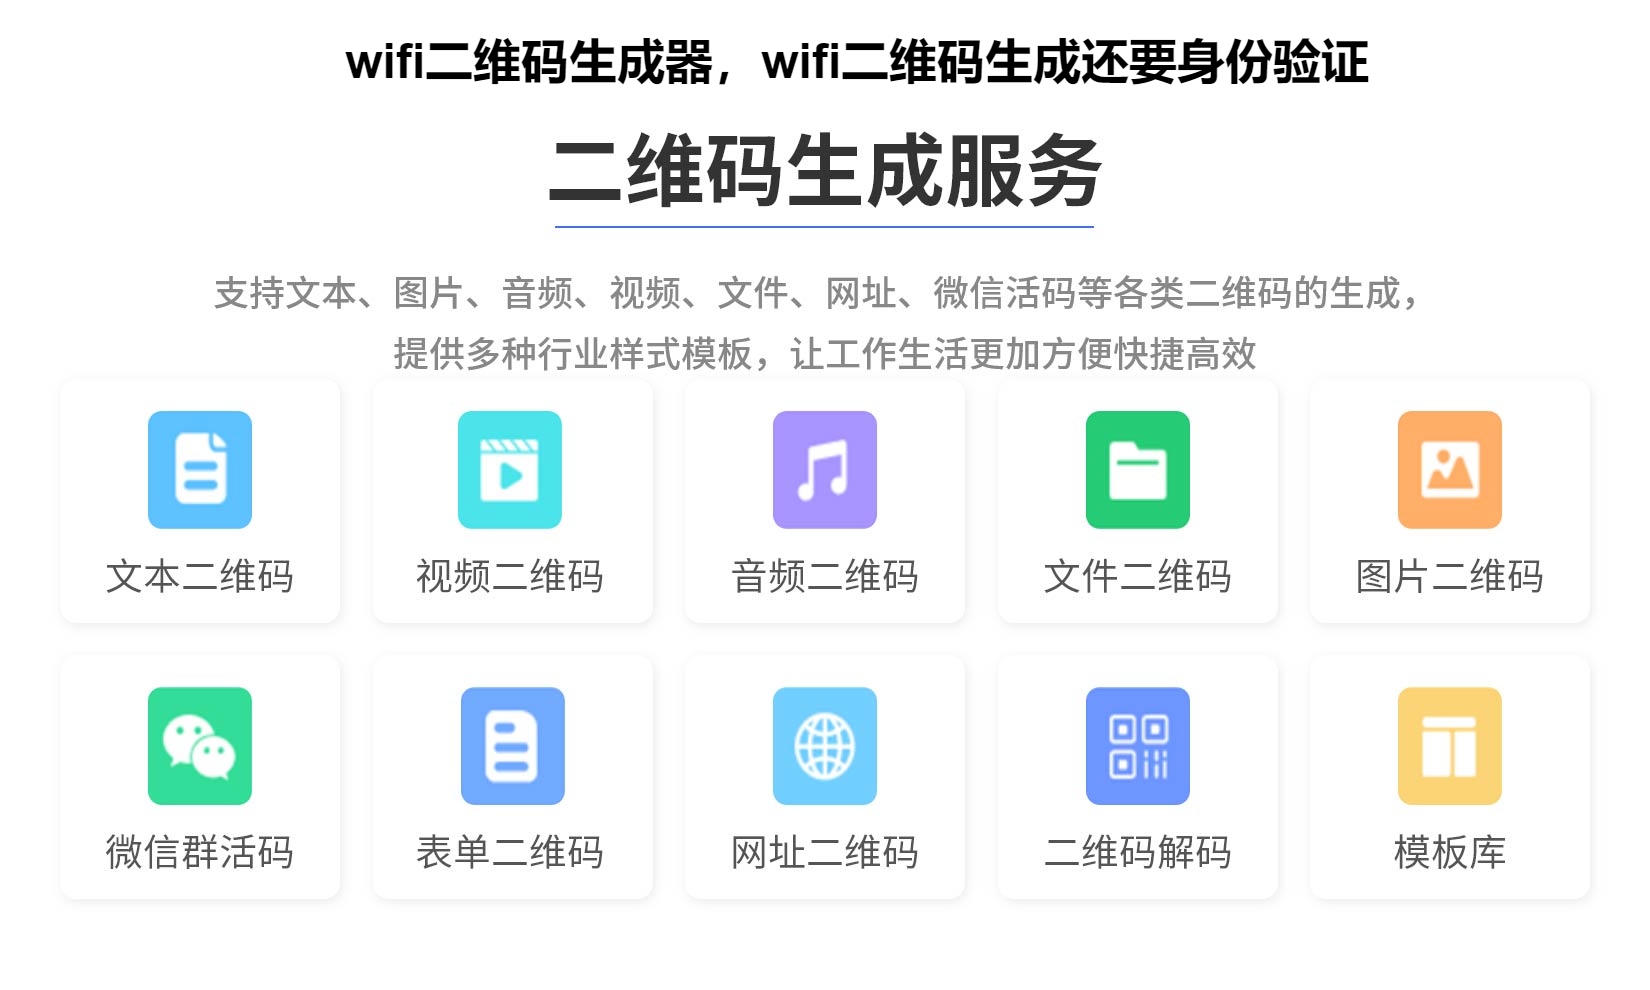 wifi二维码生成器，wifi二维码生成还要身份验证